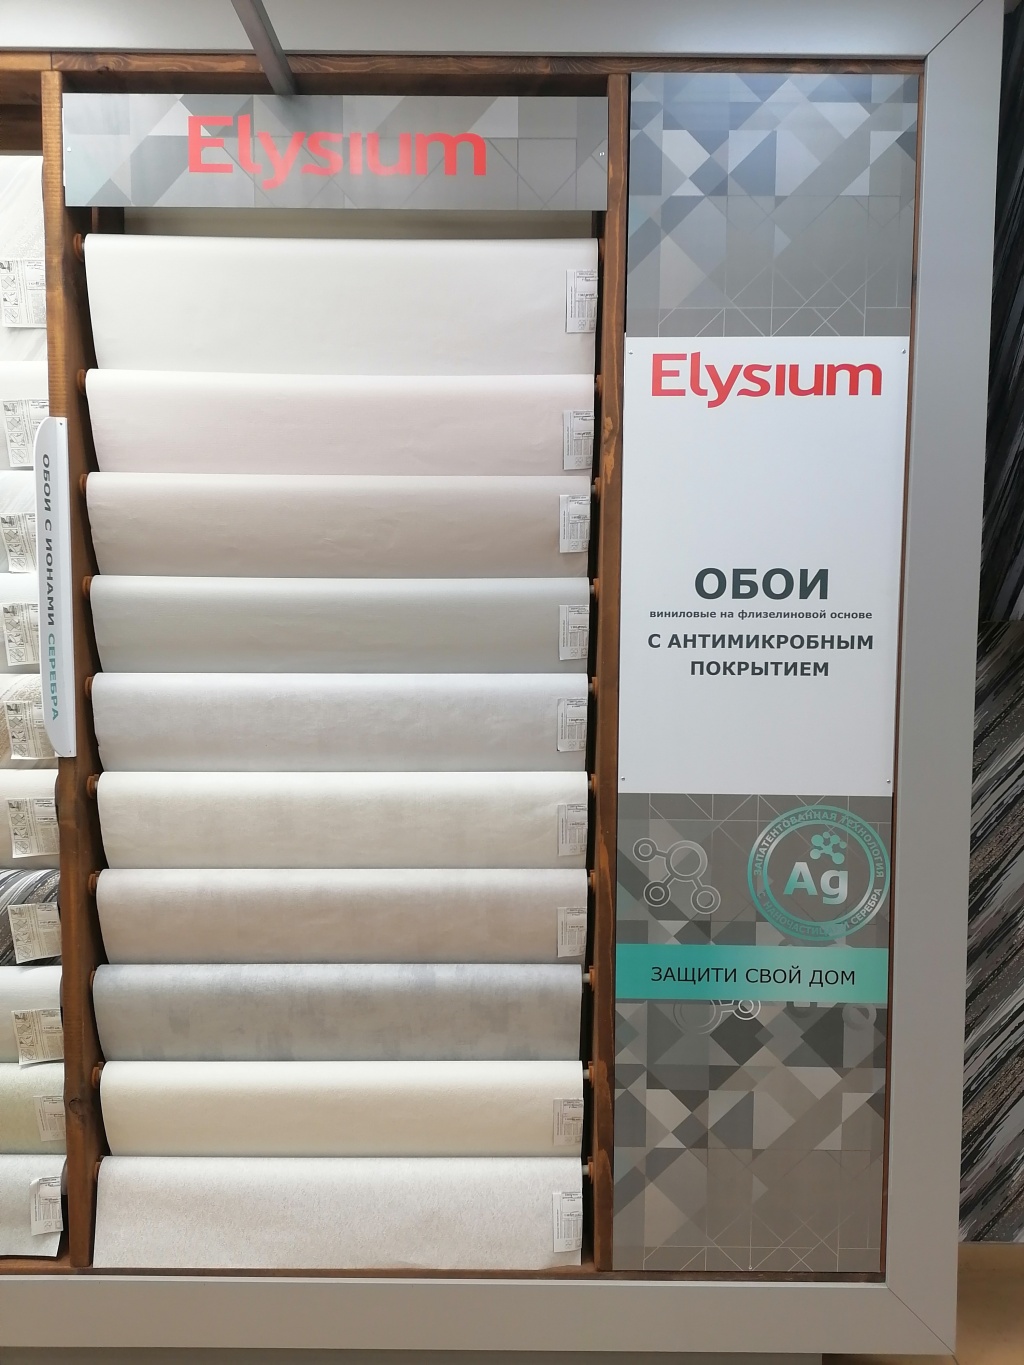 Новинка бренда Elysium - обои с ионами серебра